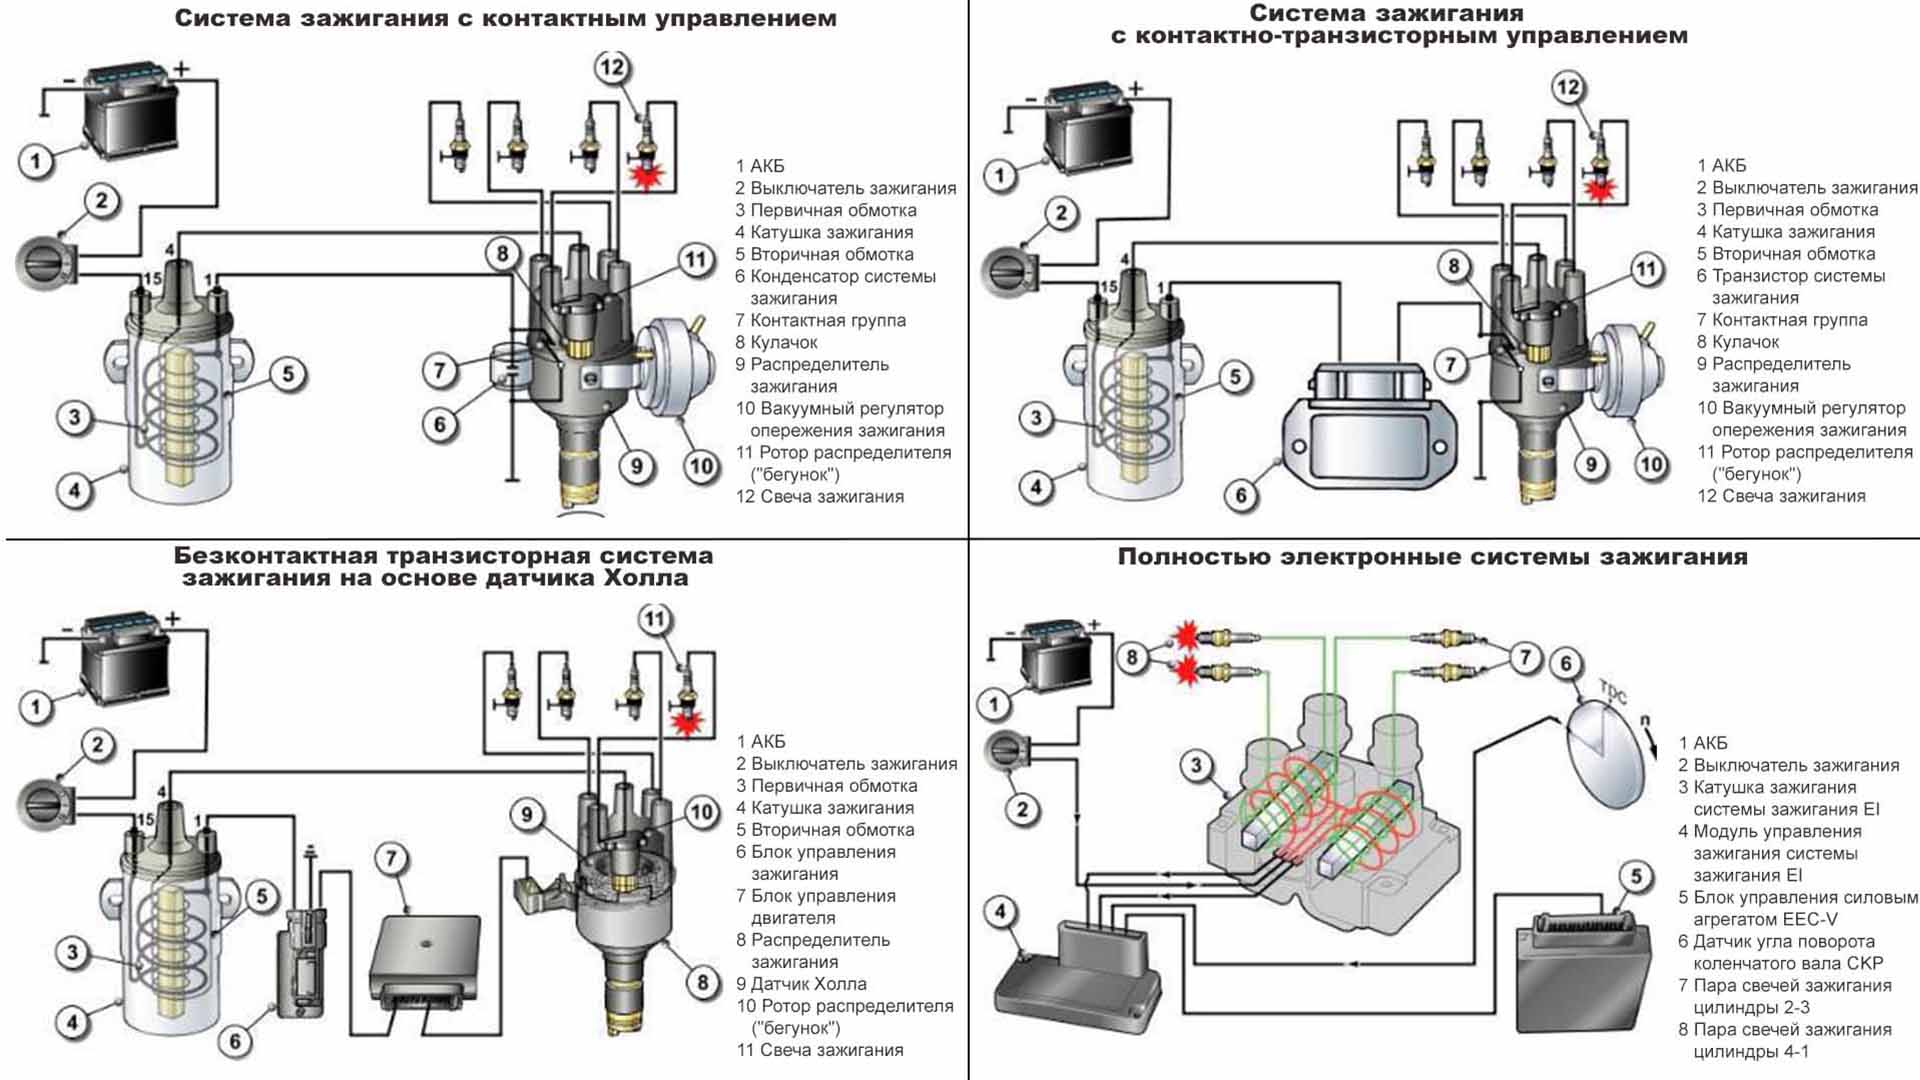 Назначение системы зажигания рабочей смеси в двигателях. магнетная система зажигания.